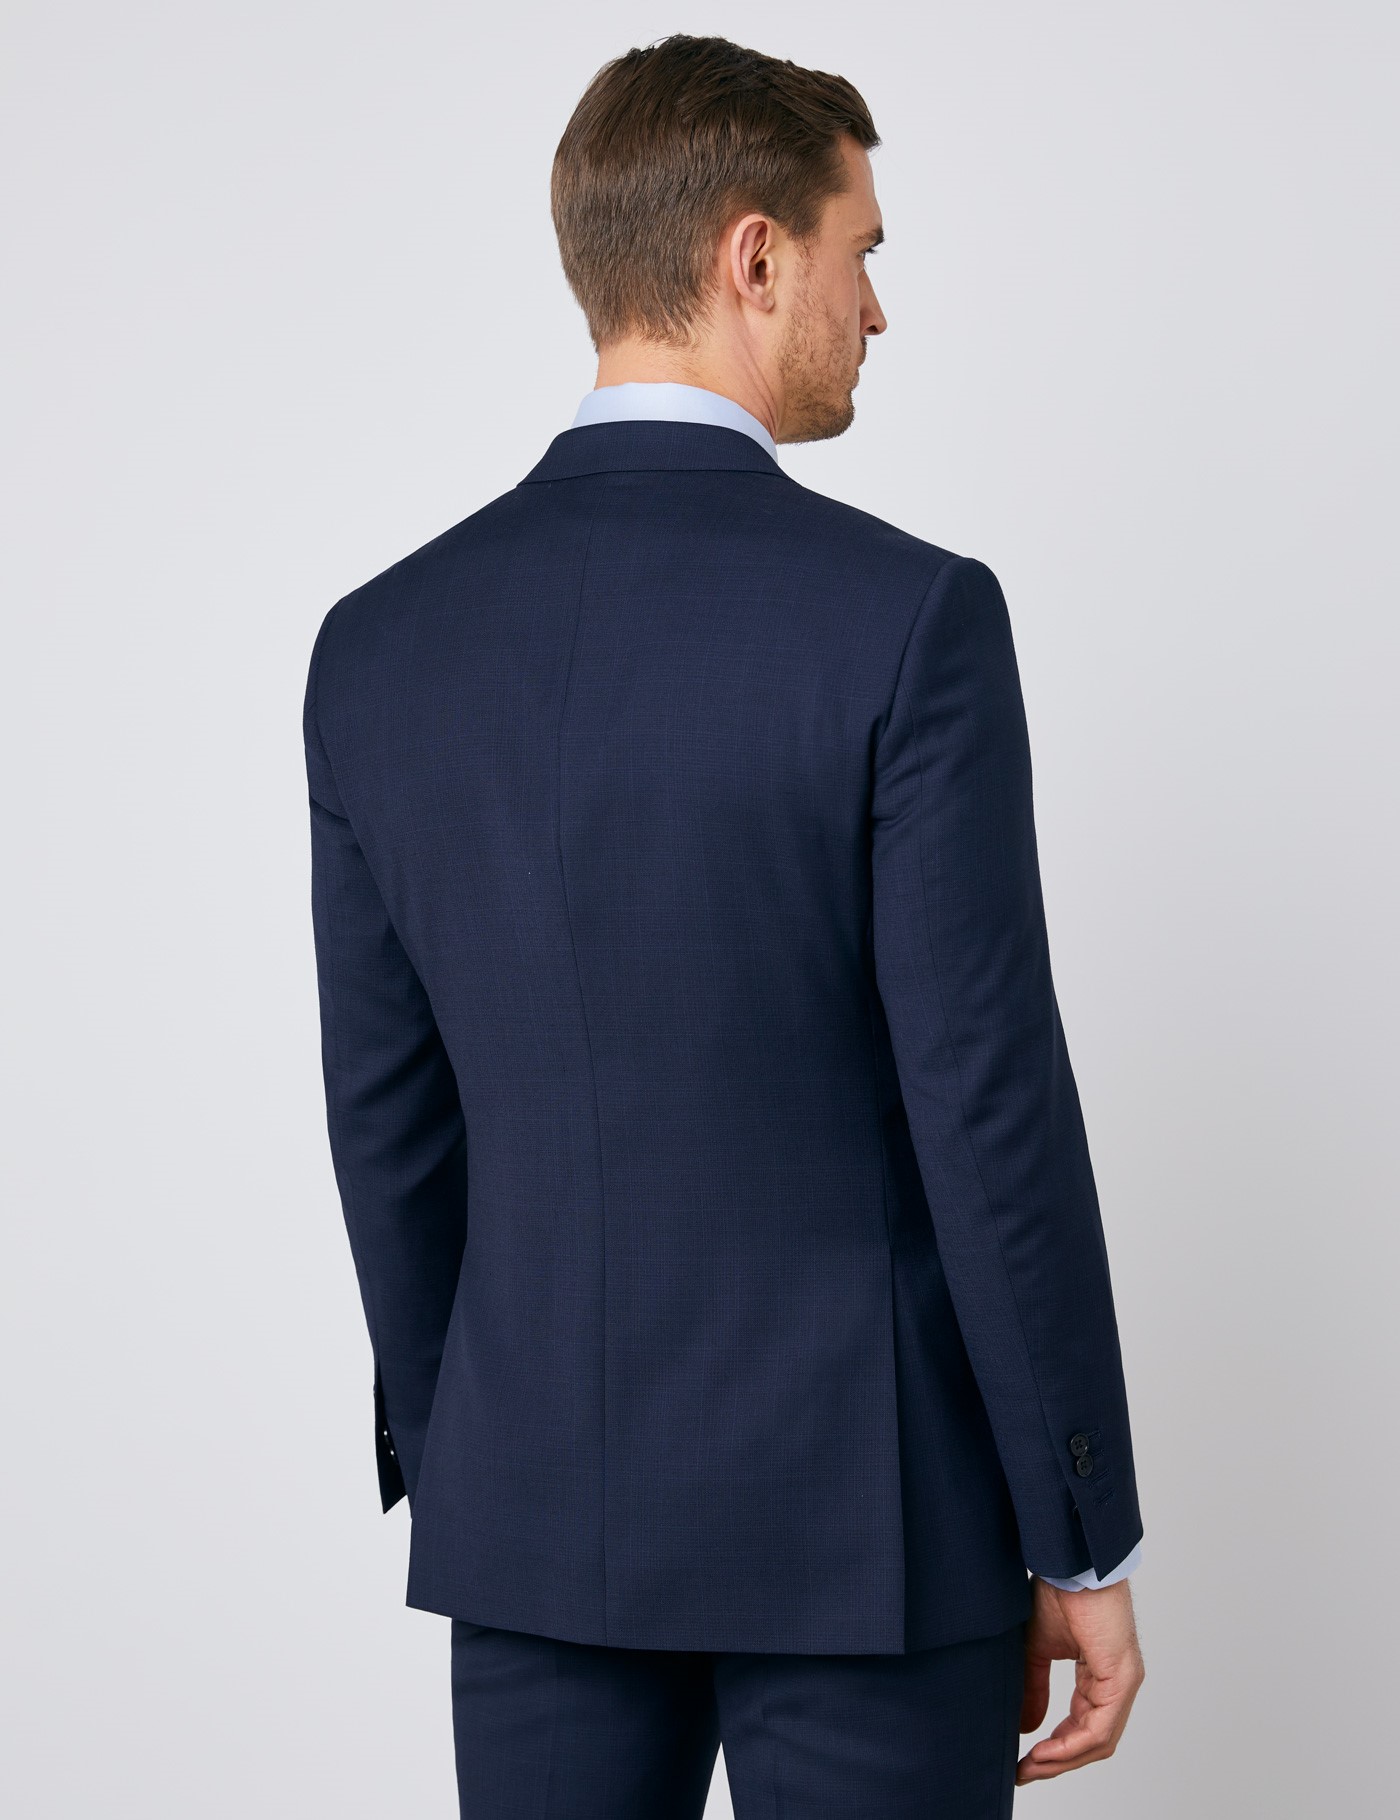 Men's Navy Tonal Plaid Slim Fit Suit | Hawes & Curtis